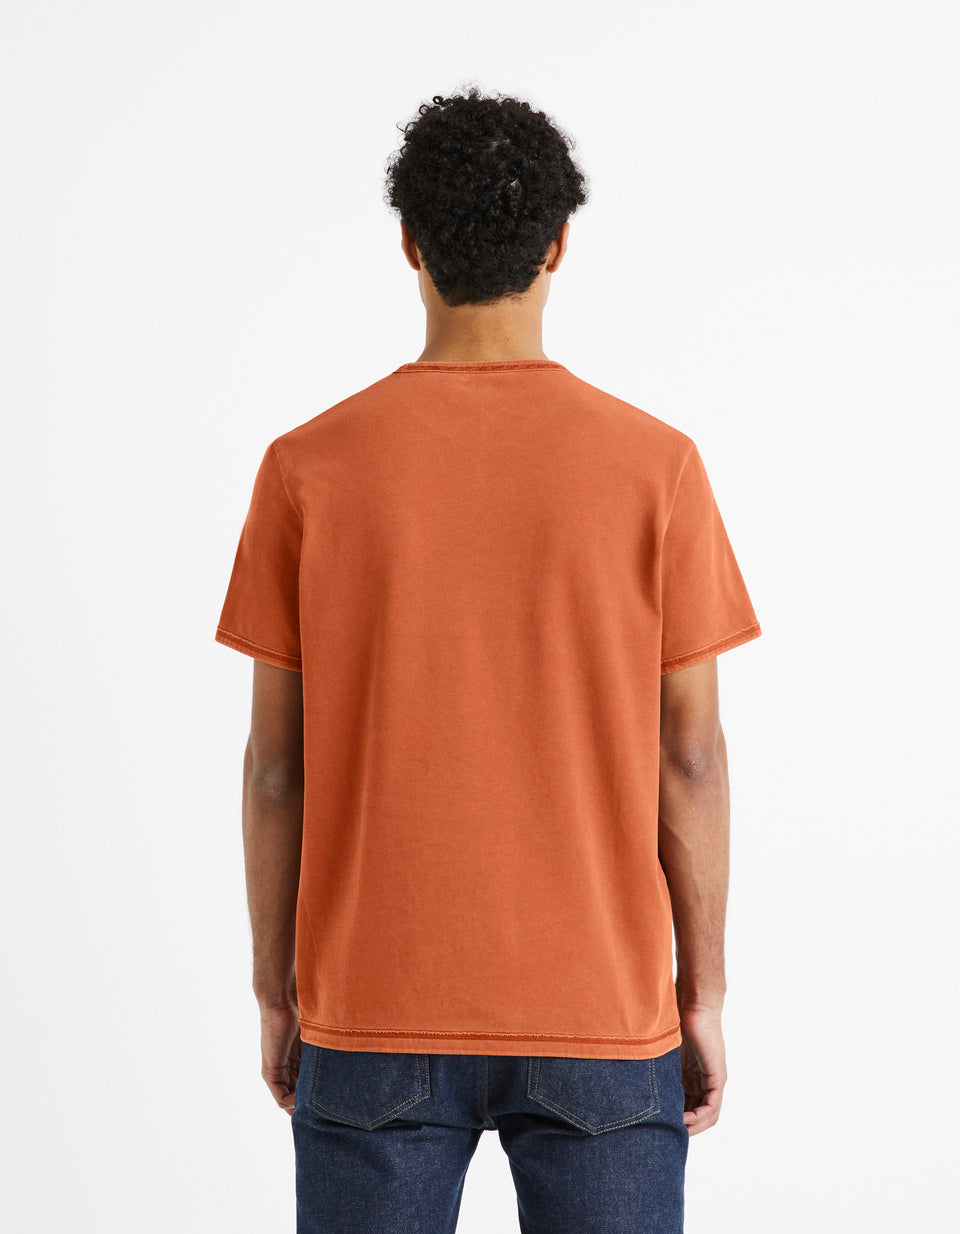 T-Shirt Turtleneck Around 100% Cotton - Terracotta - 03